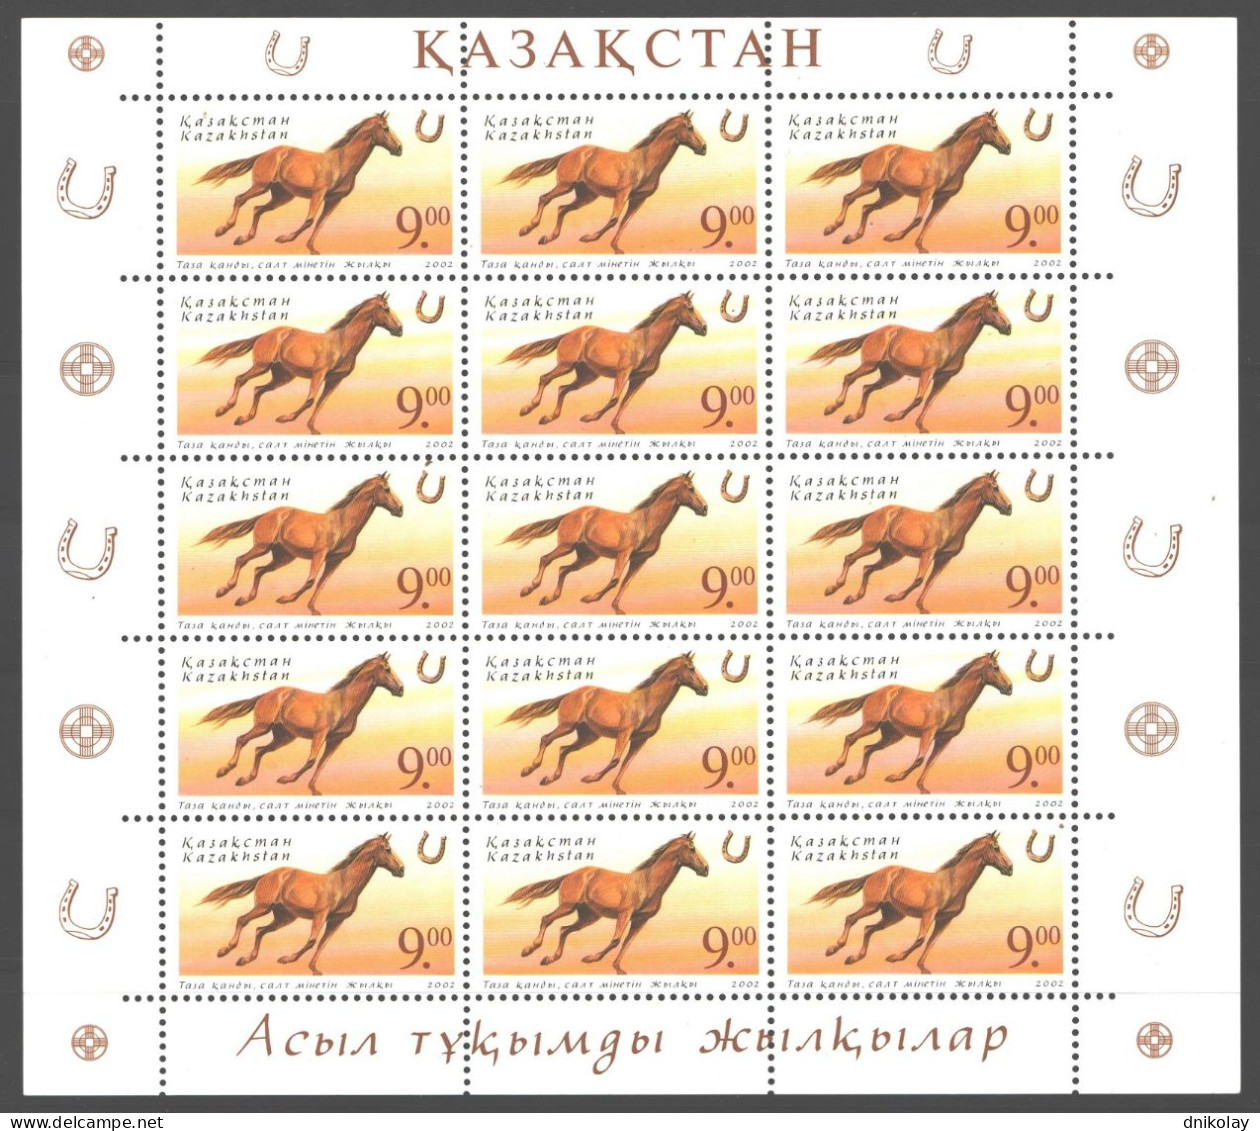 2002 367 Kazakhstan Horses MNH - Kazakhstan